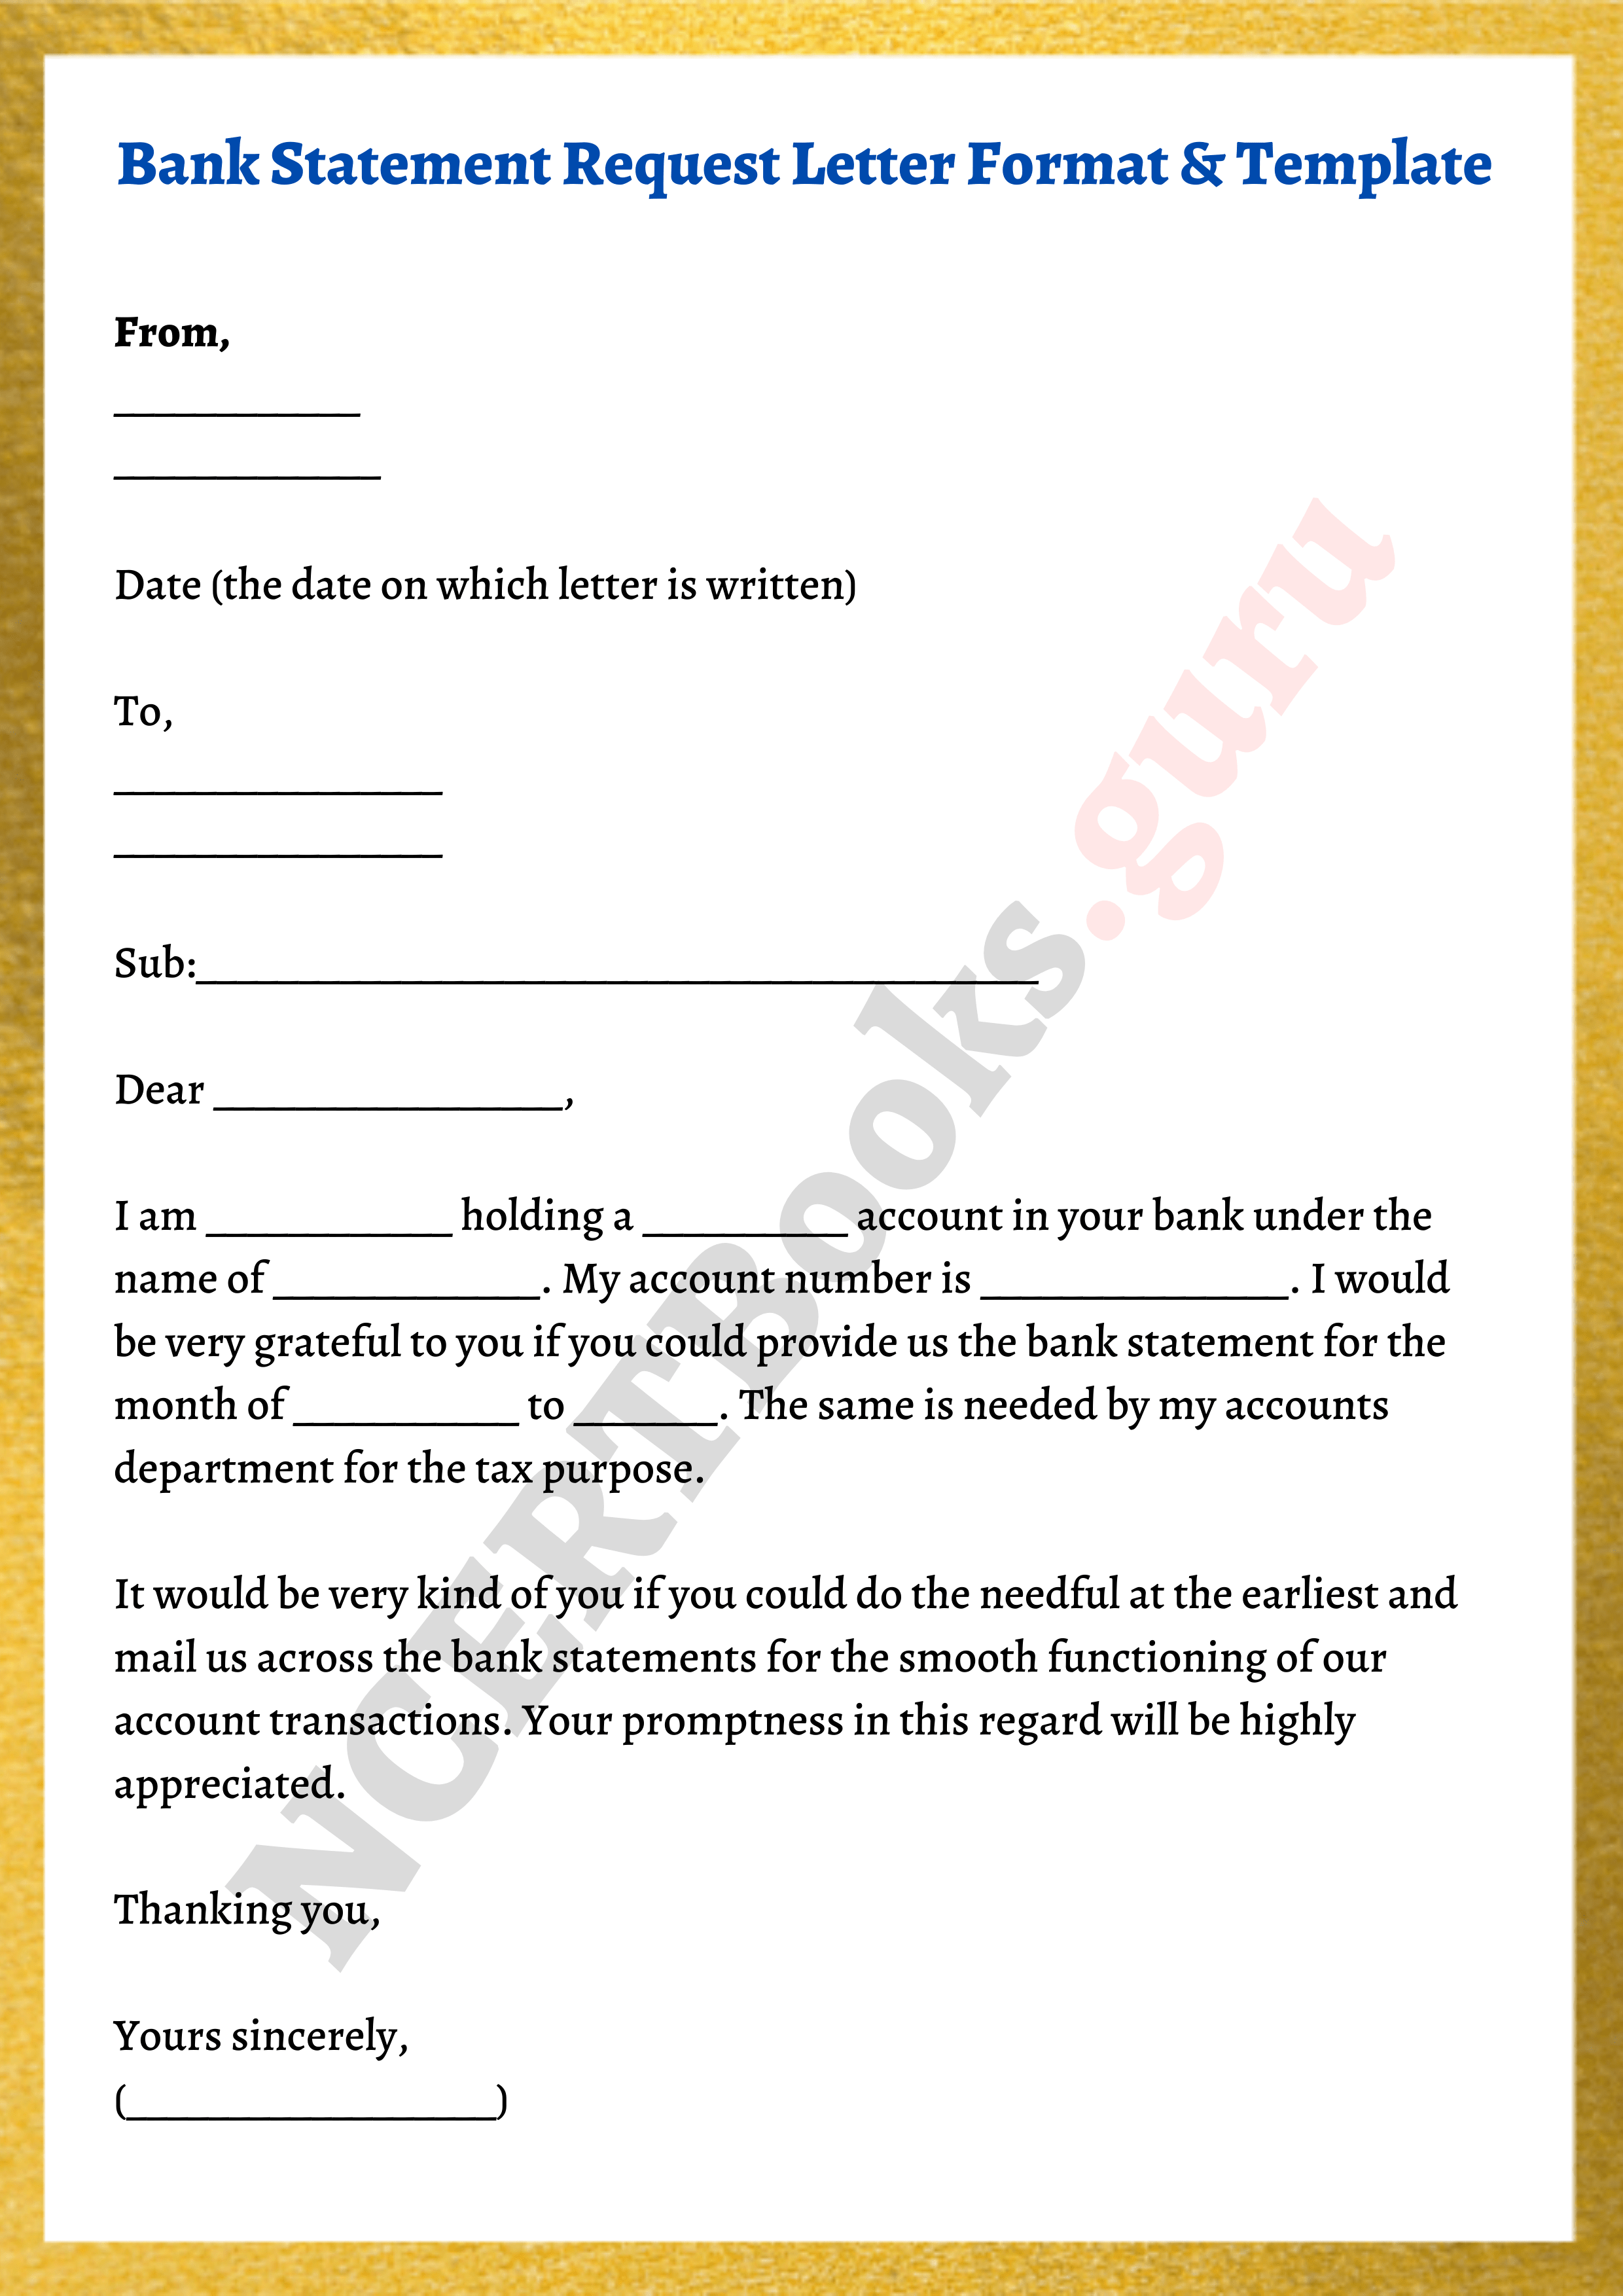 formát bankovního výpisu žádost o dopis